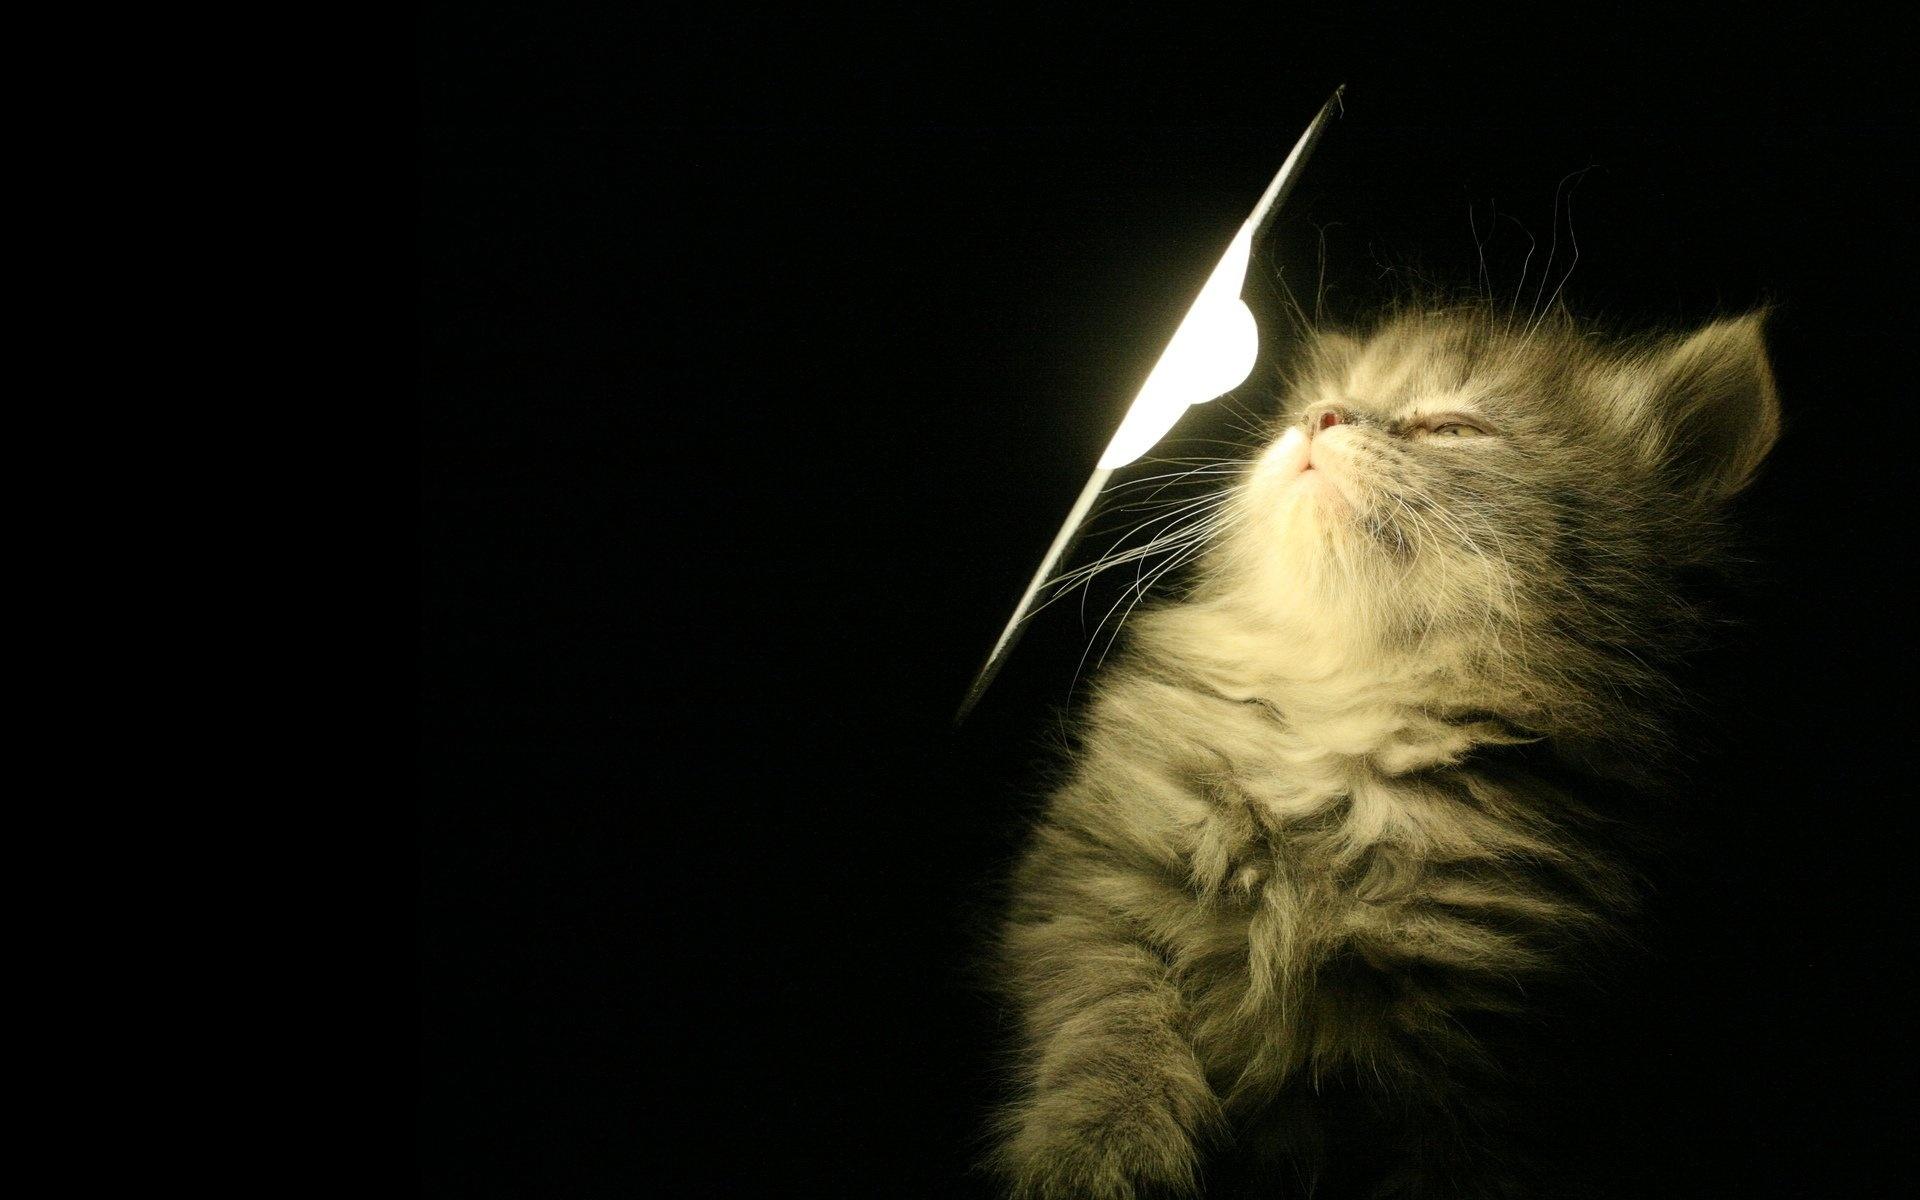 Котенок, пушистый, свет, лампа обои для рабочего стола, картинки, фото .